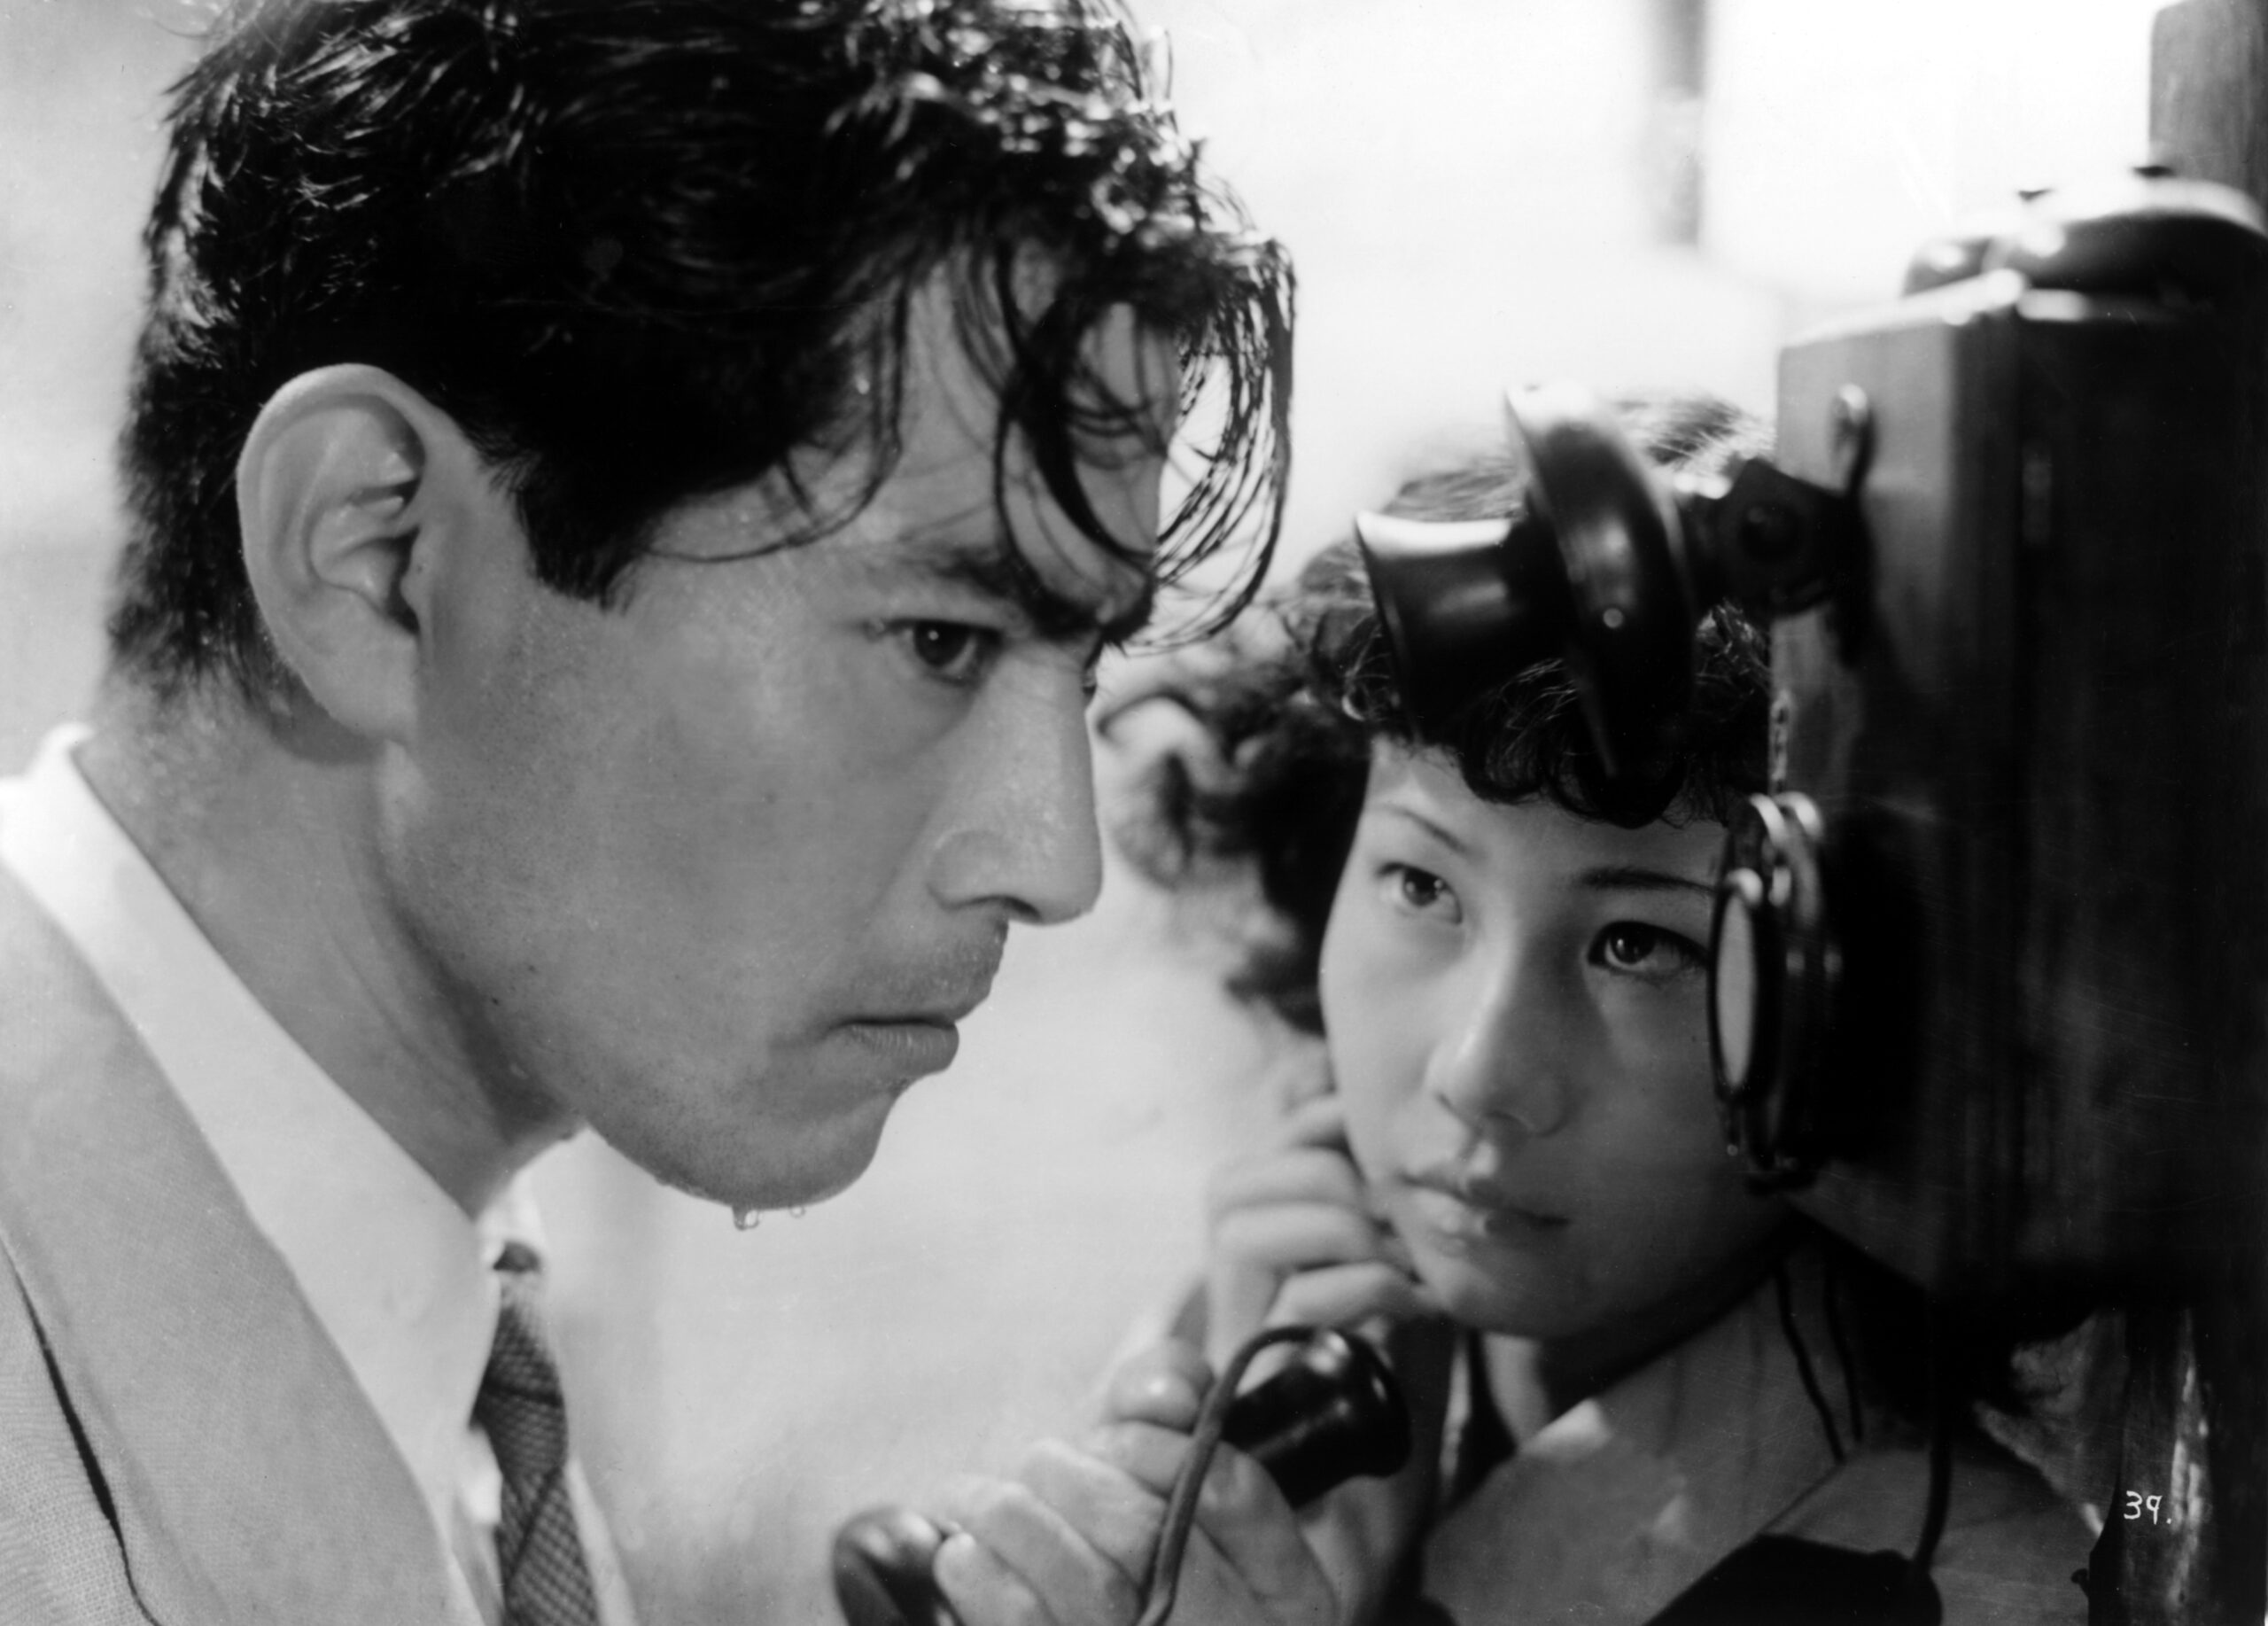 concours - [Concours] Gagnez CHIEN ENRAGE d'Akira Kurosawa en édition restaurée Chien Enrage photo020 scaled